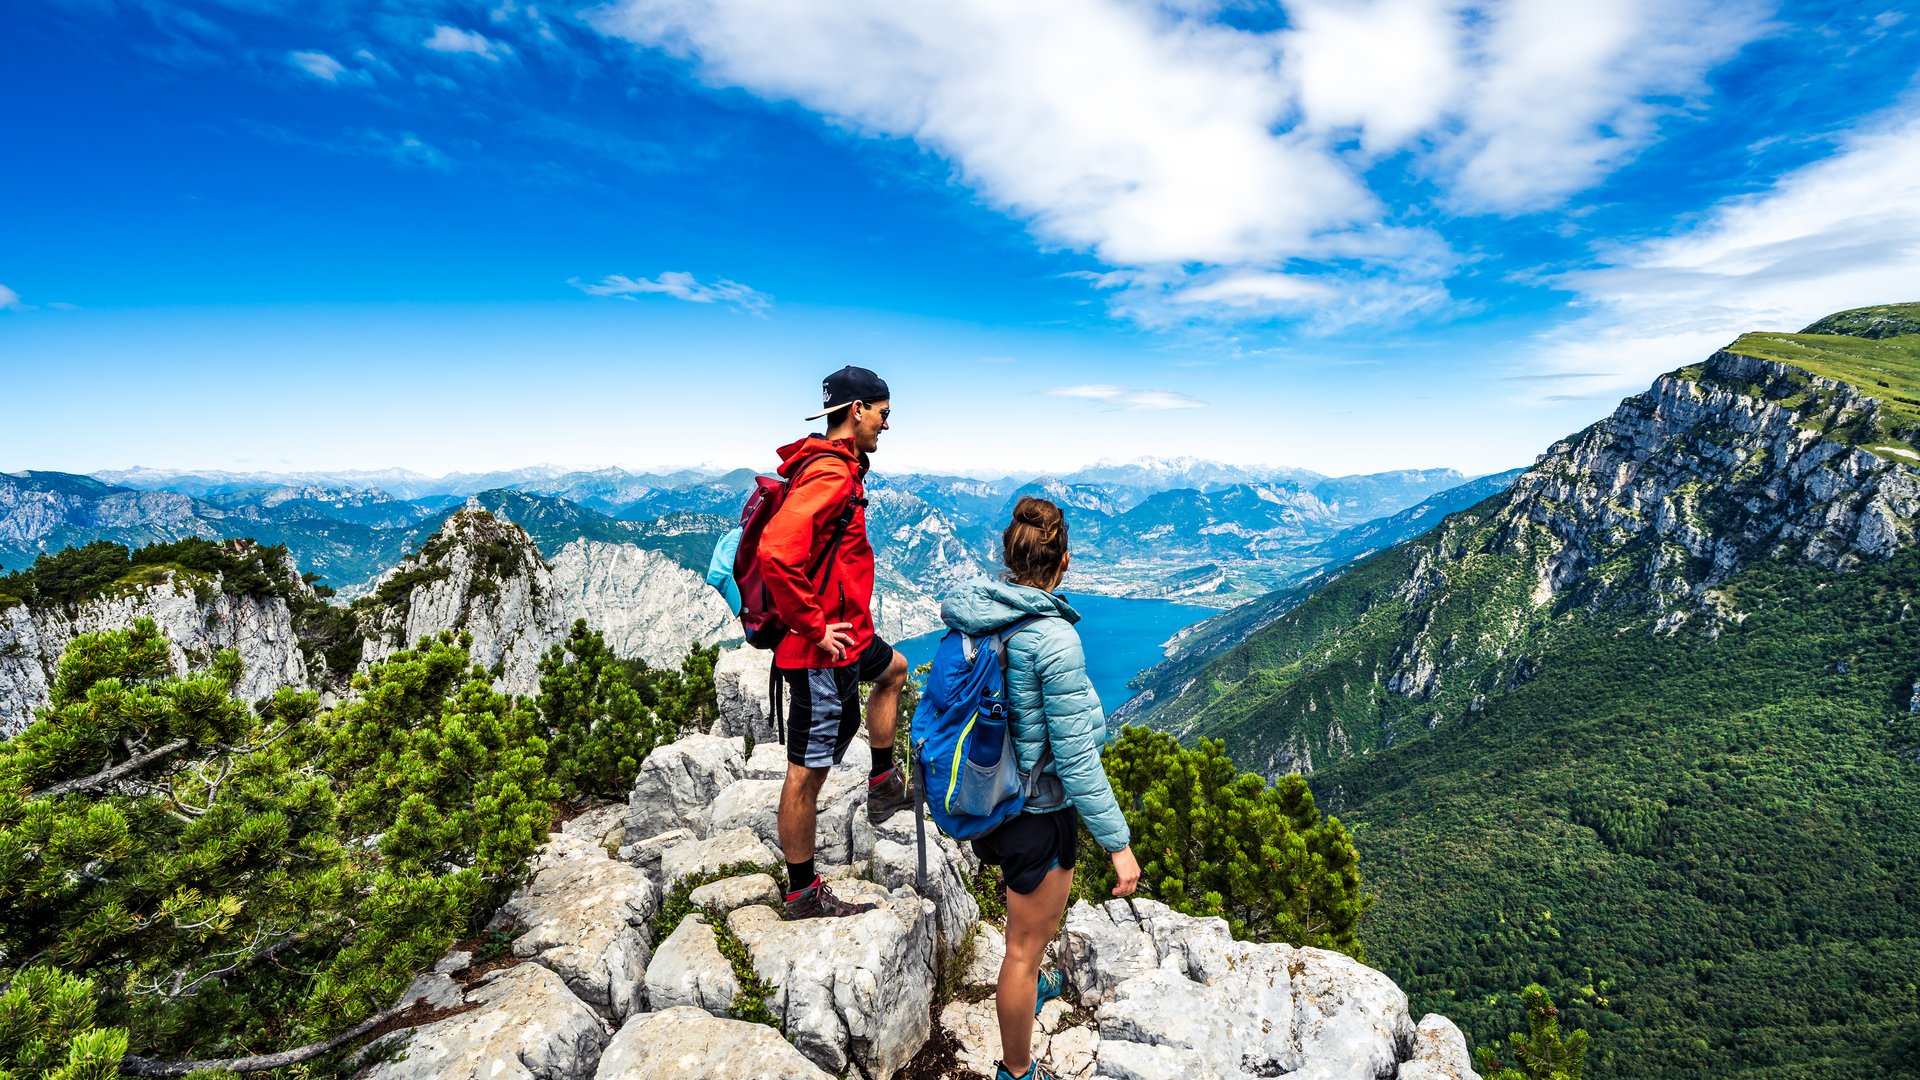 Lake Garda: hiking, jogging, and more